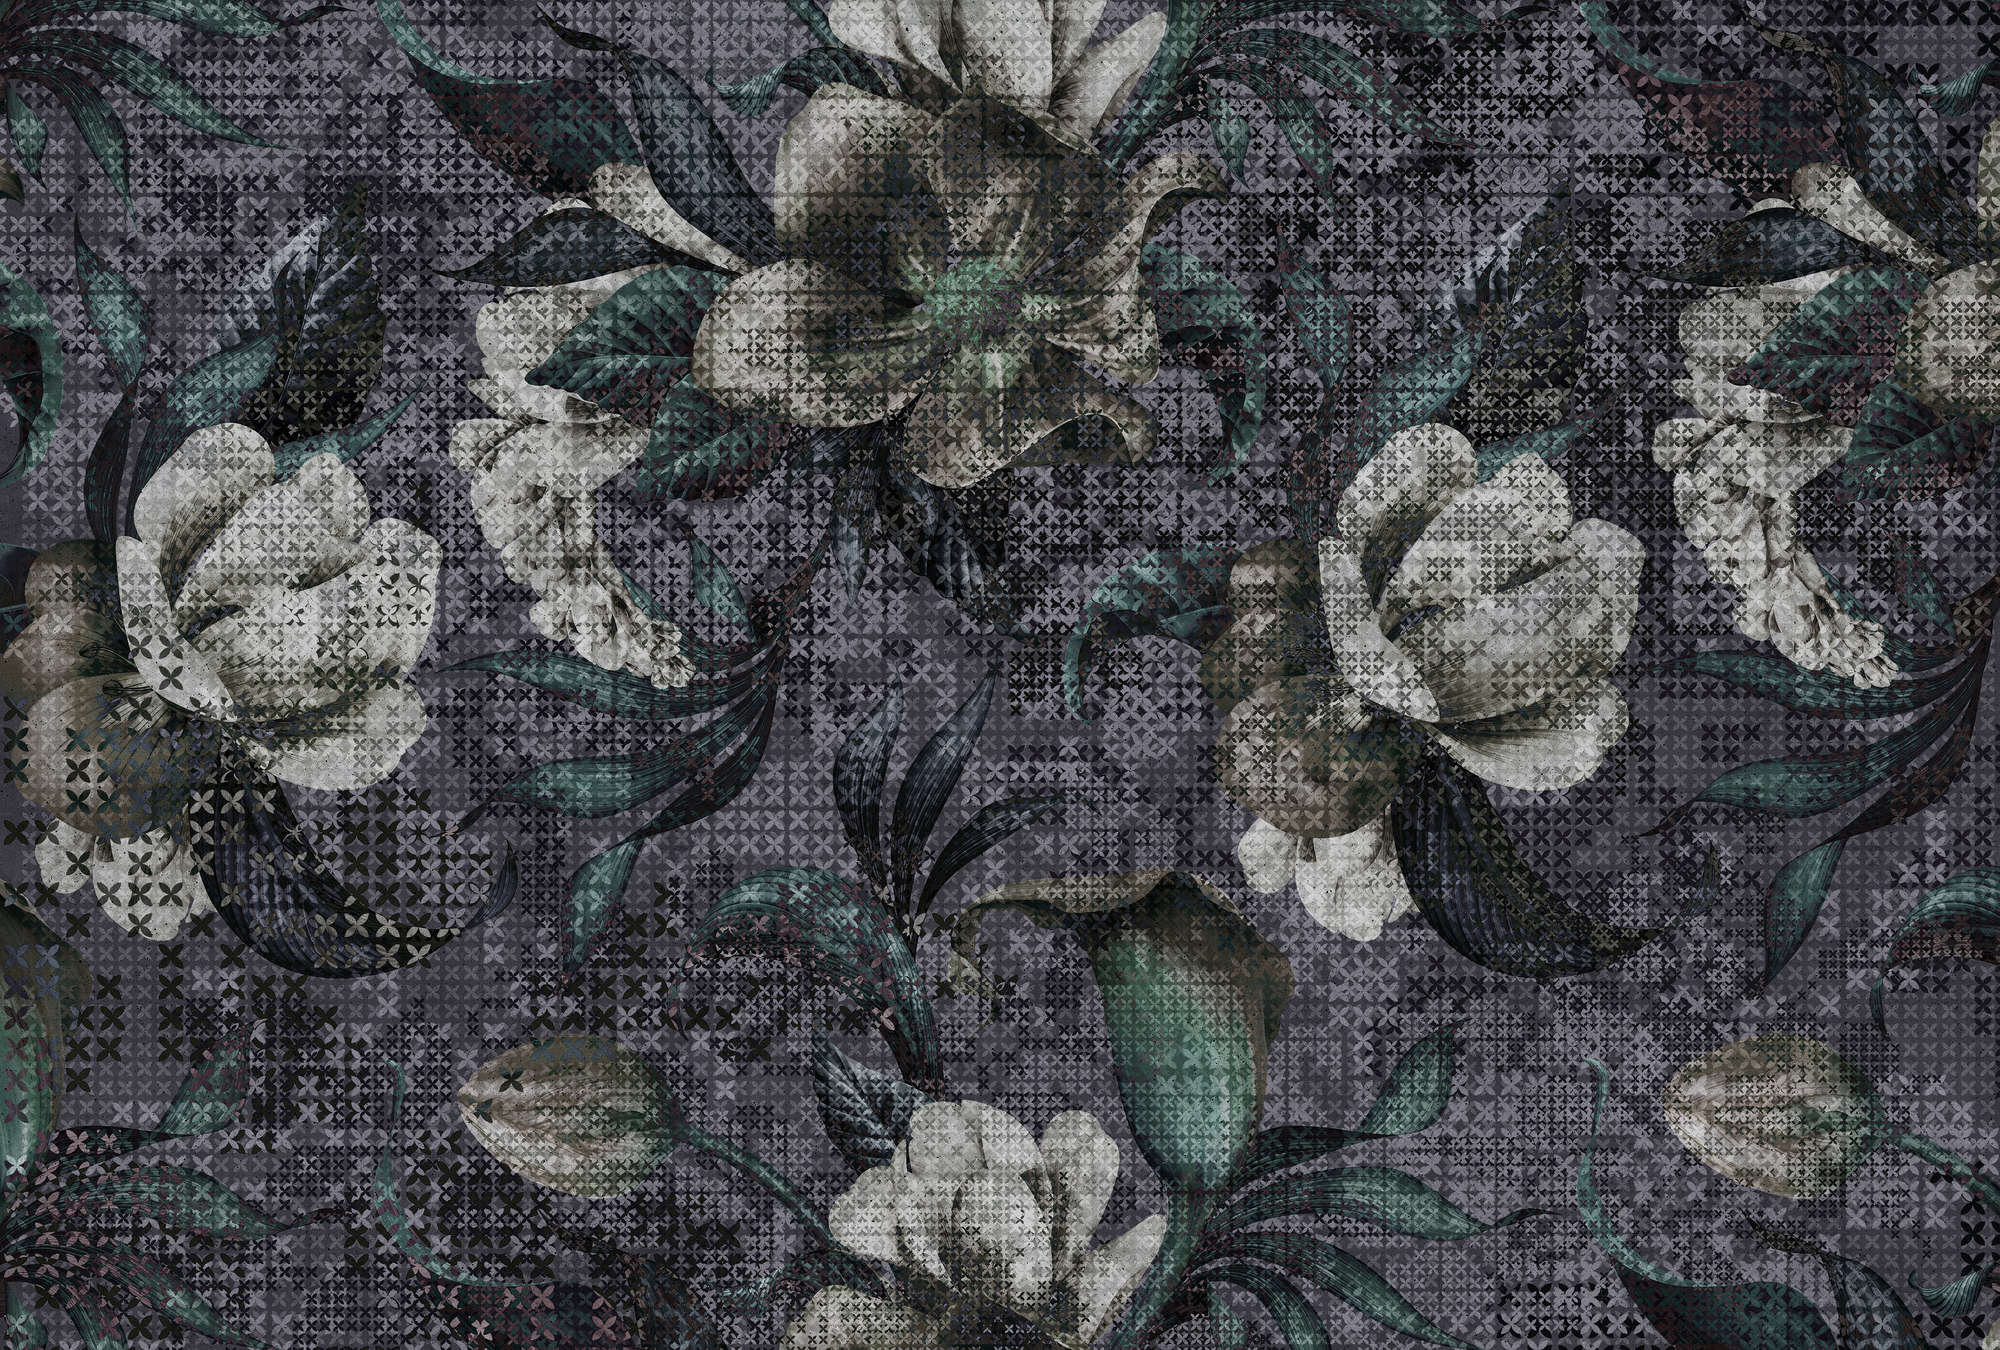             Blumen Fototapete Pixel Design – Schwarz, Weiß
        